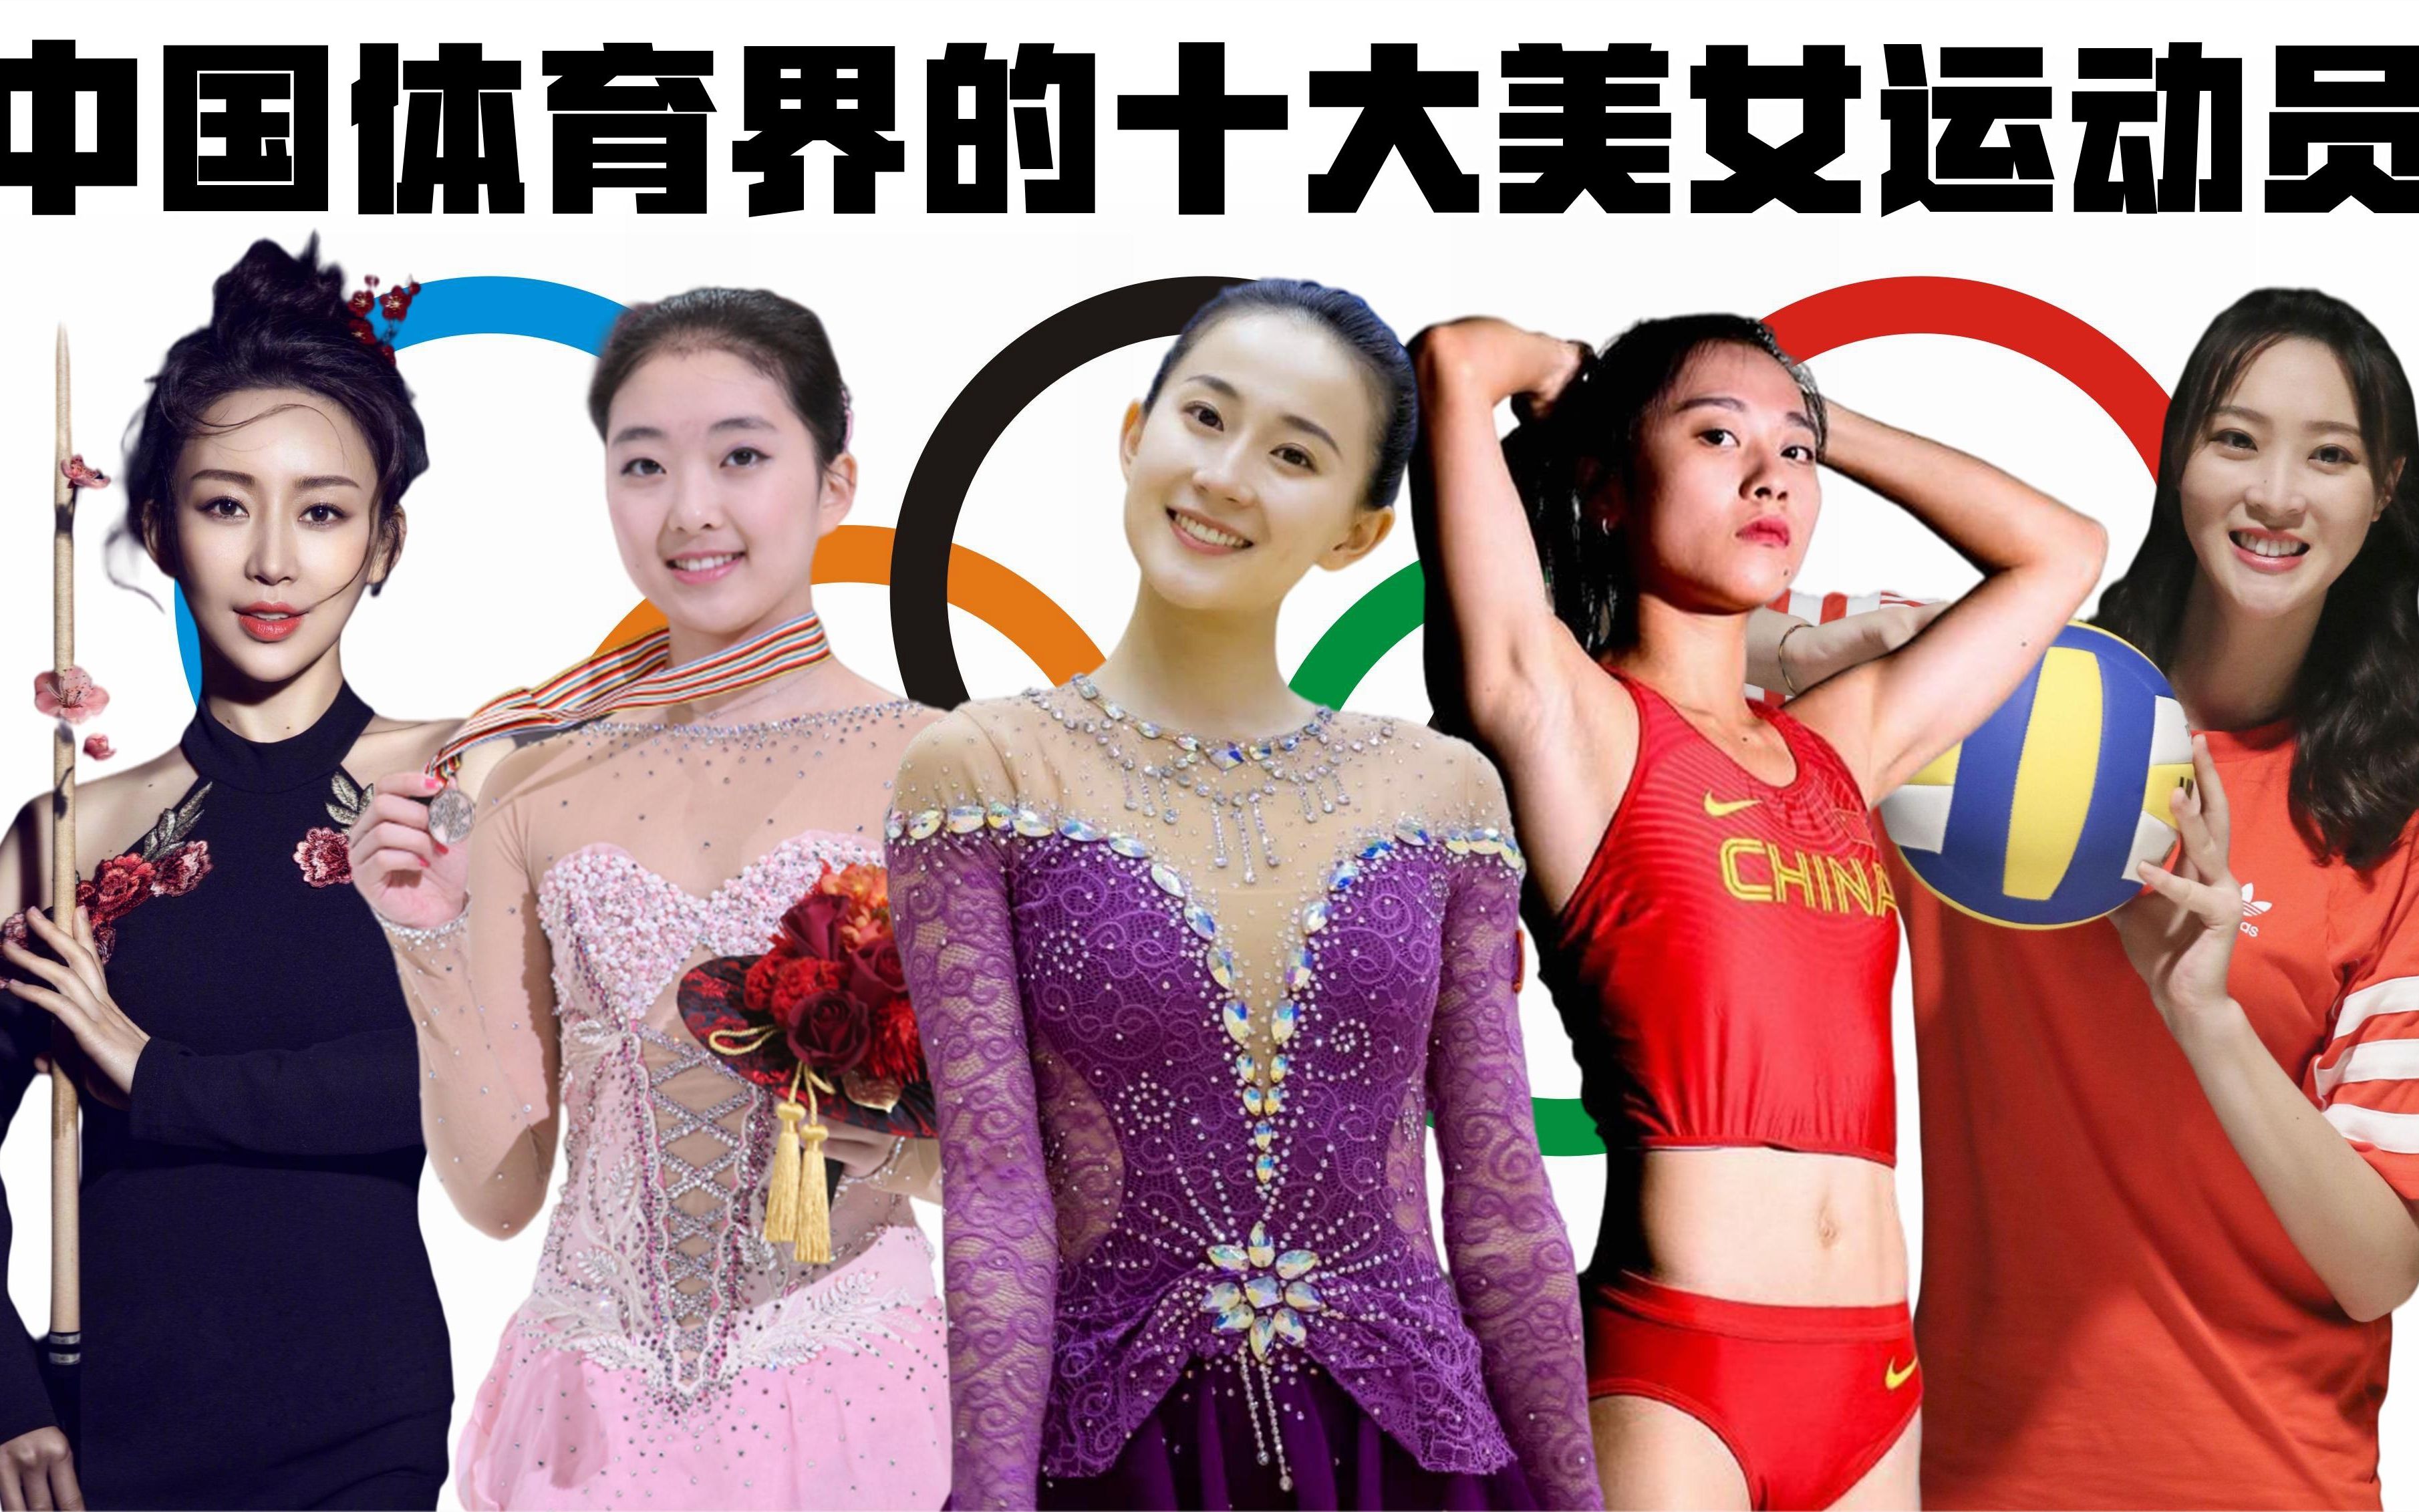 中国体育界的十大美女运动员:体操张豆豆上榜,个个都是女神级!